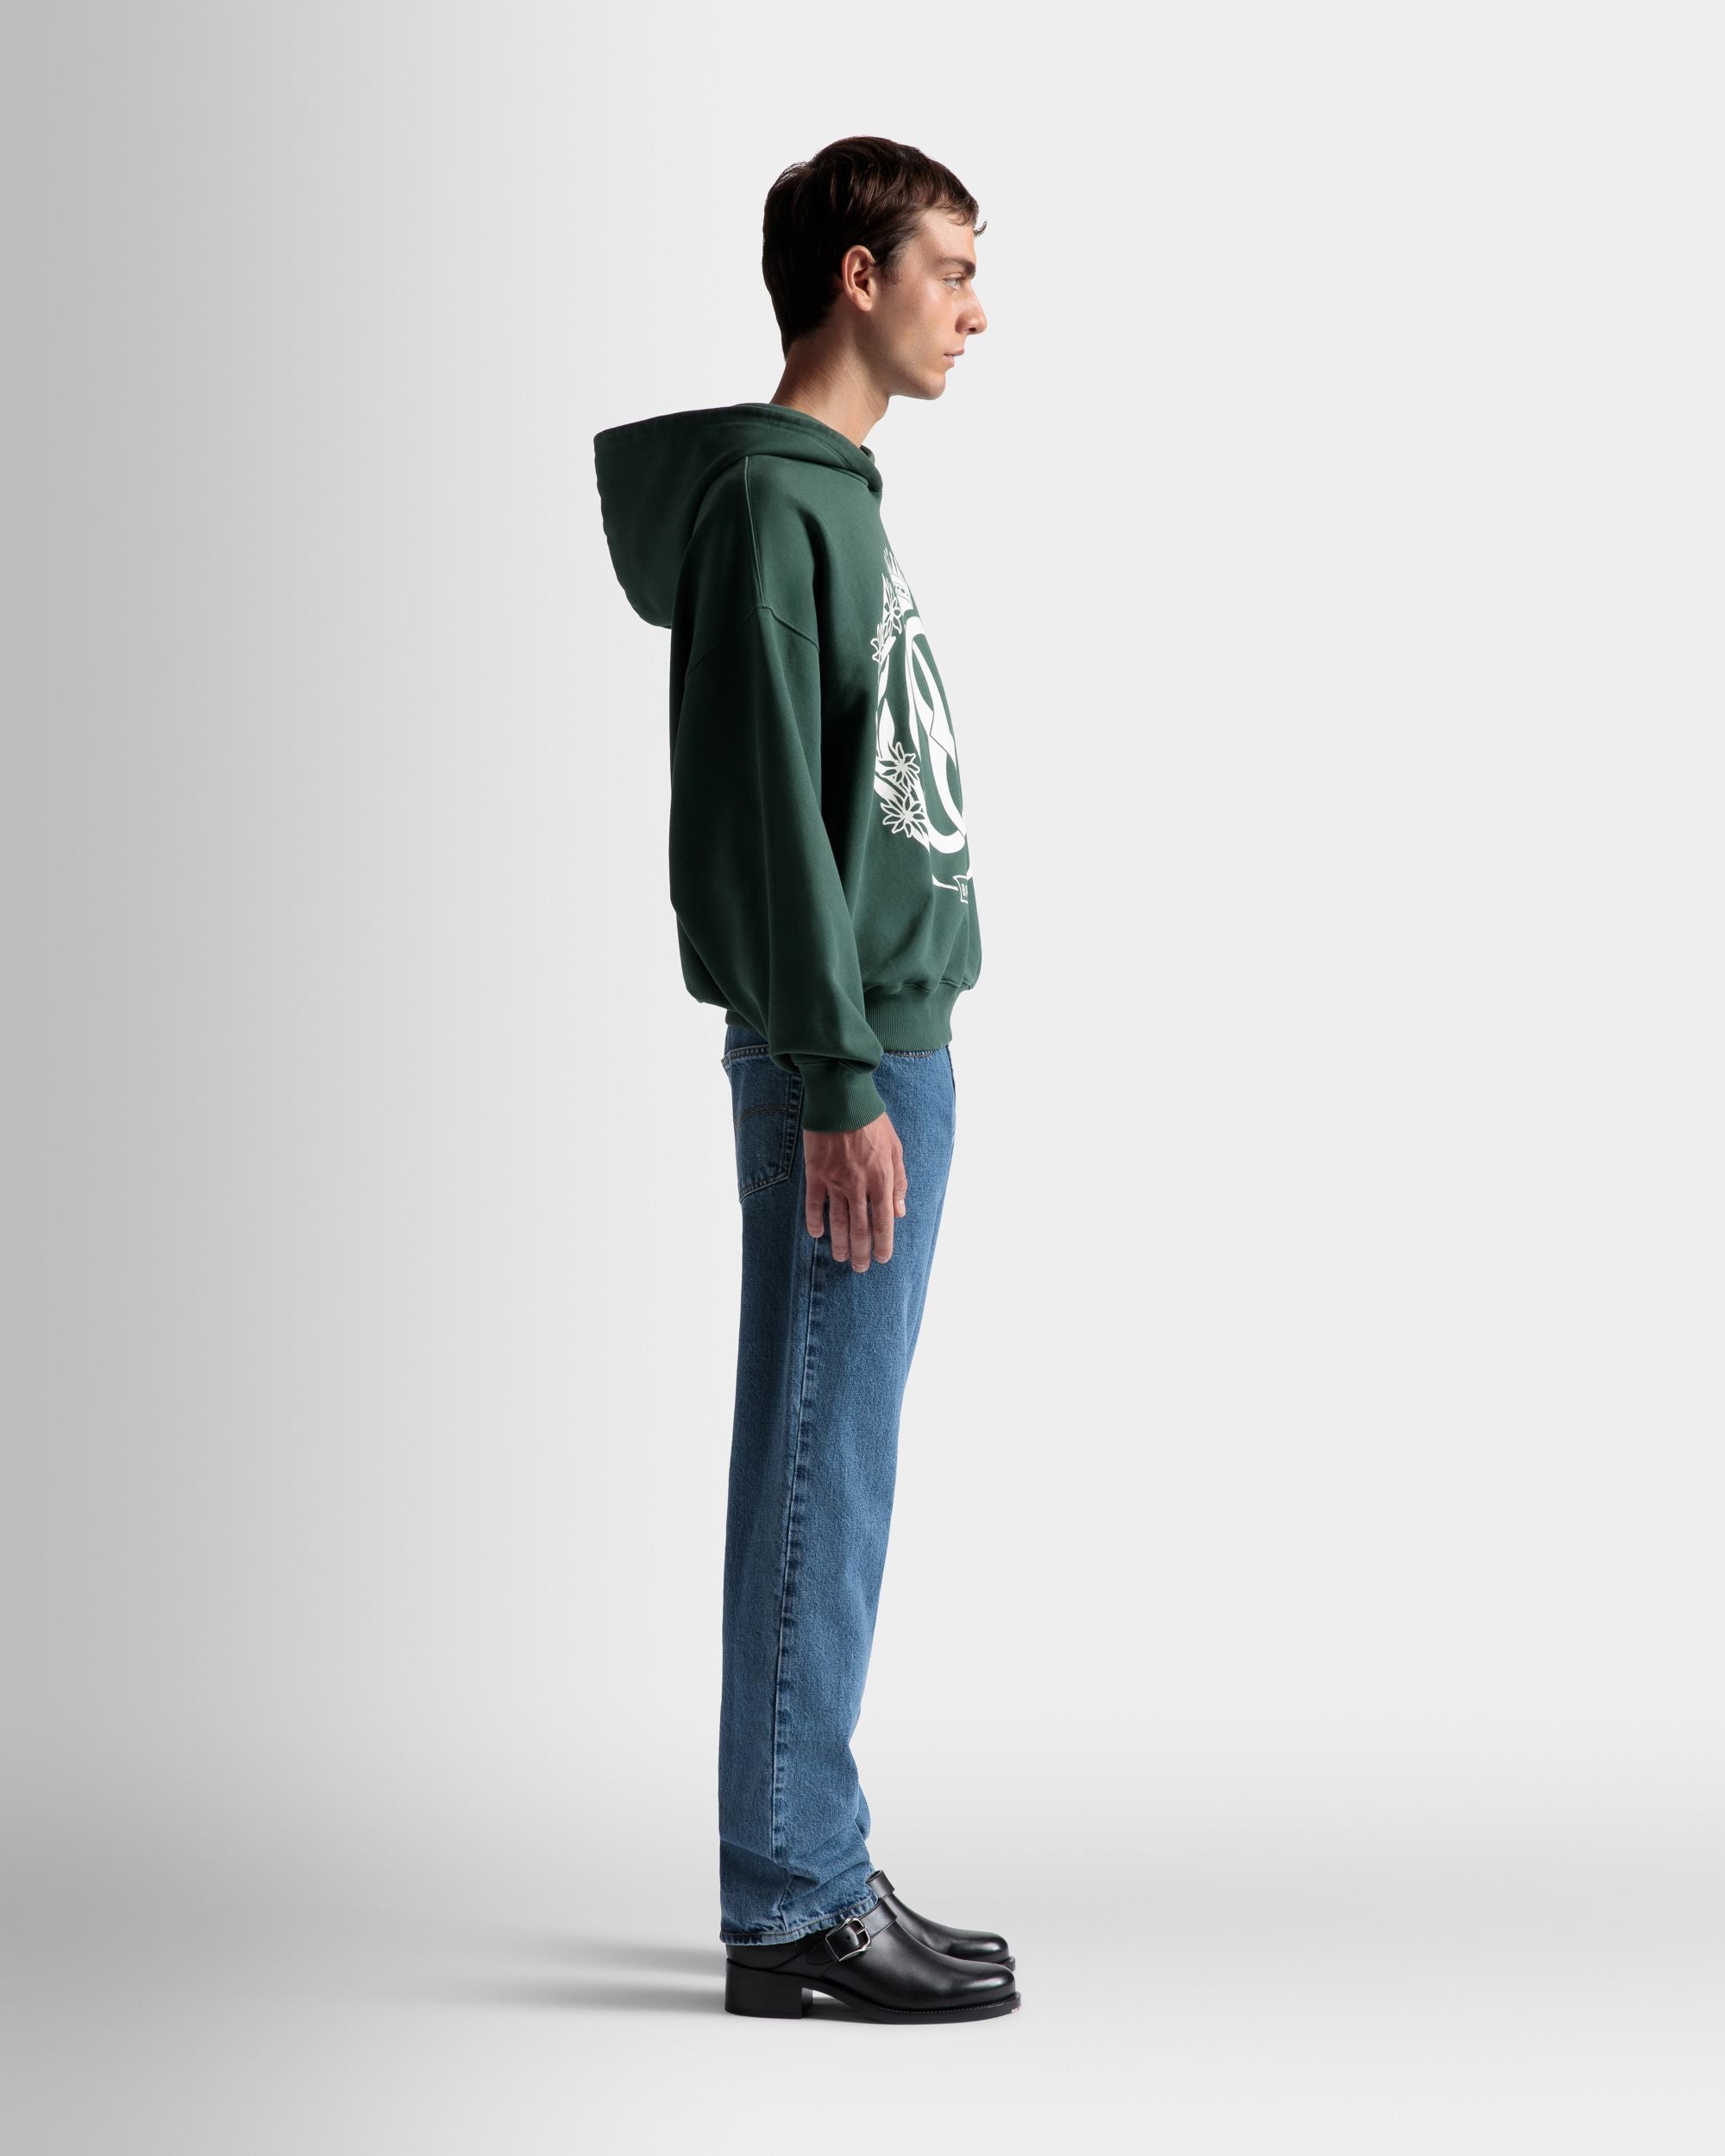 Foiled Hooded Sweatshirt | Men's Sweatshirt | Kelly Green Cotton | Bally | On Model 3/4 Front